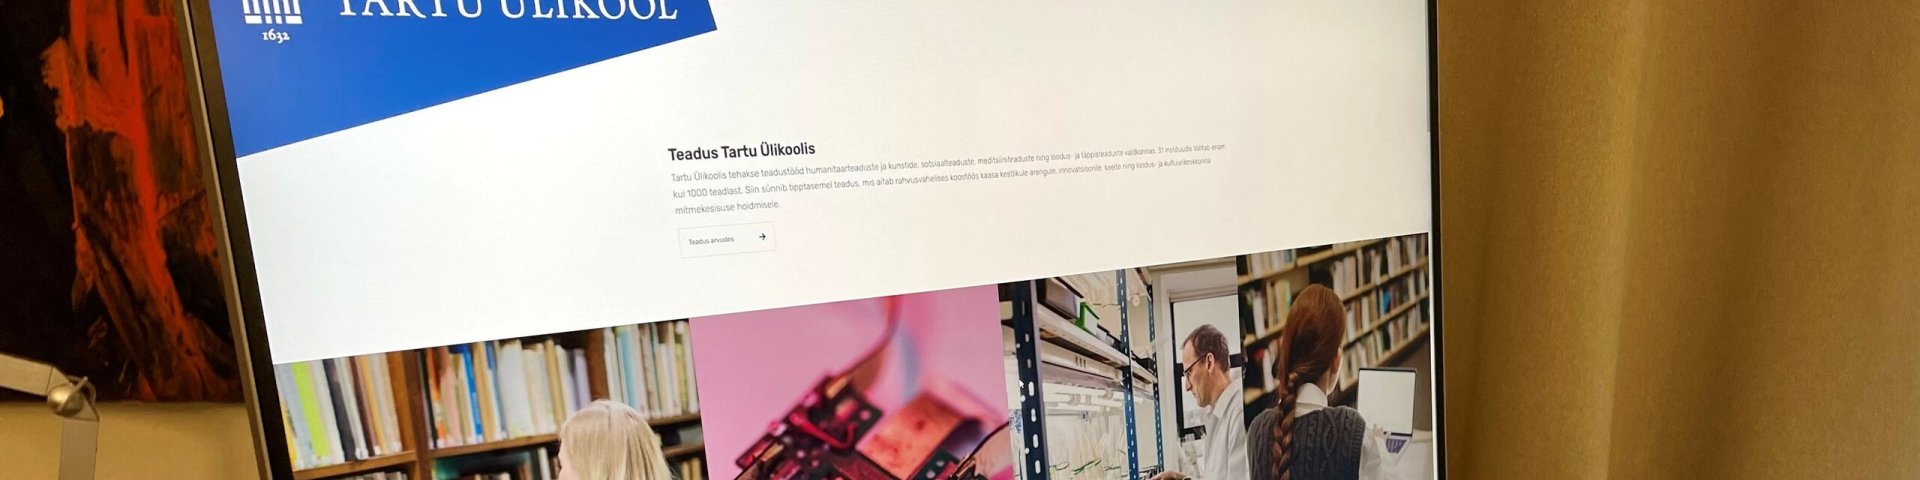 Tartu Ülikooli uue veebi teaduse rubriik